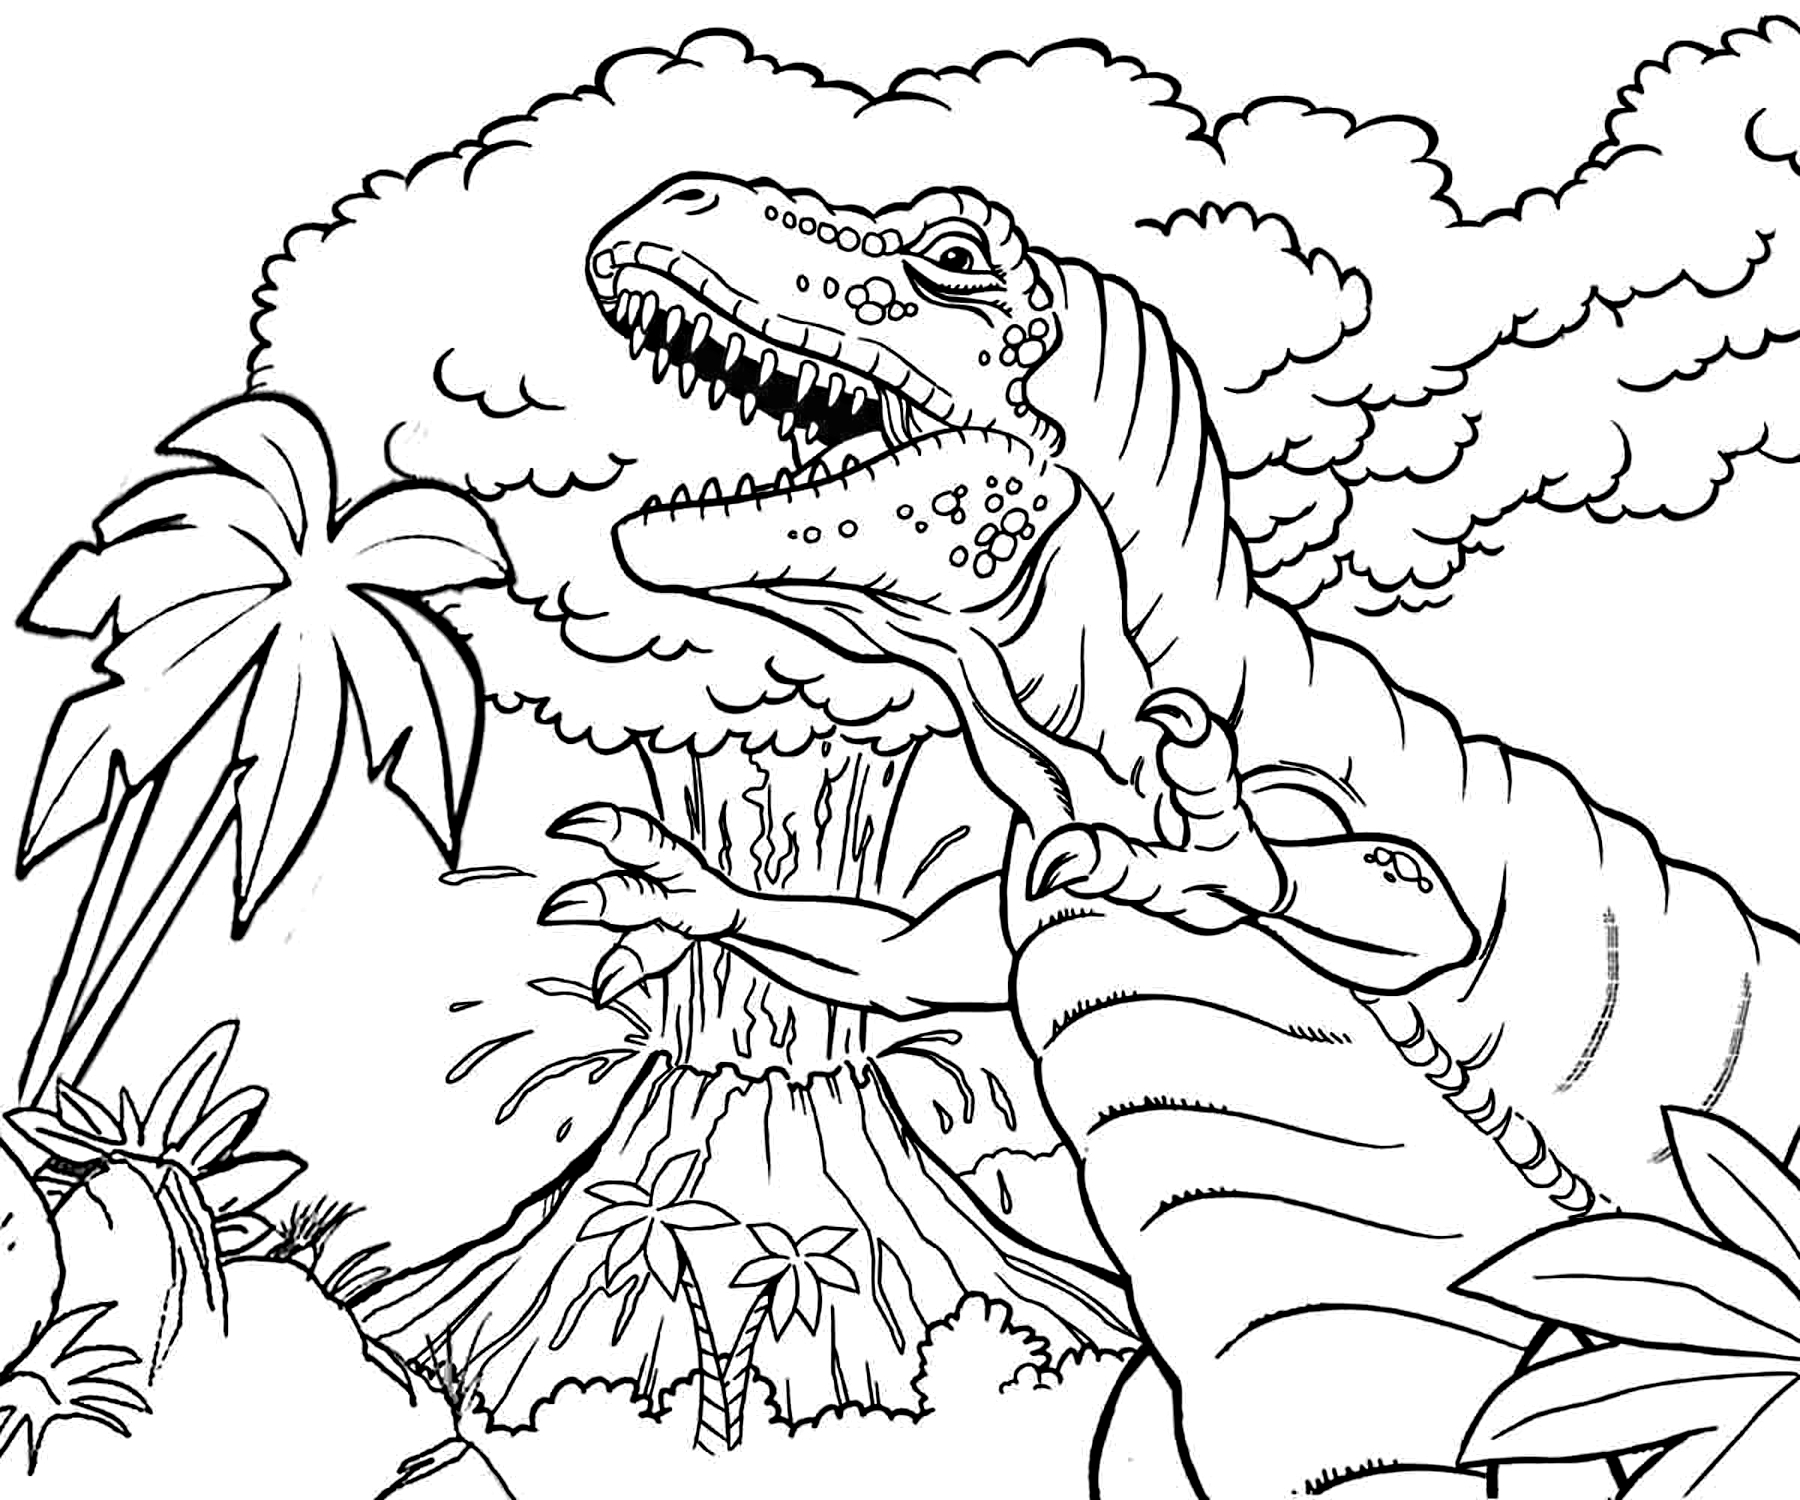 Dibujo De Jurassic World Para Colorear Tyello